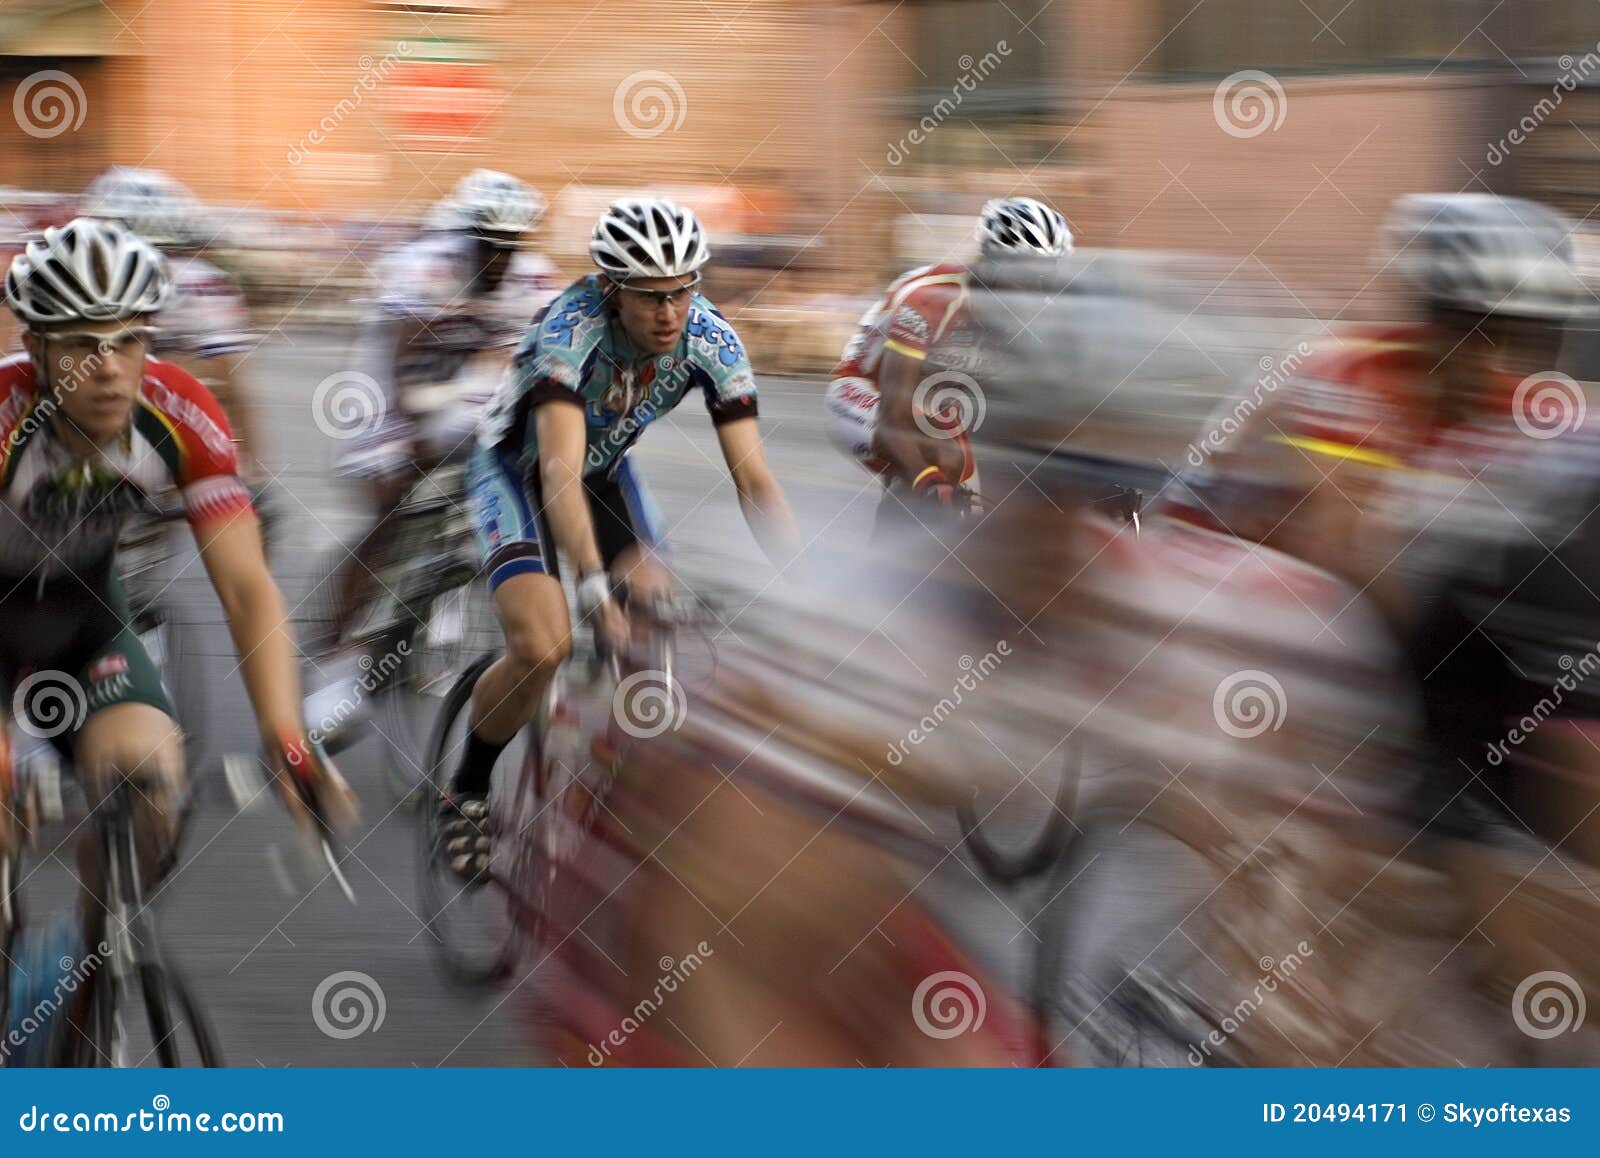 sun city cycle race